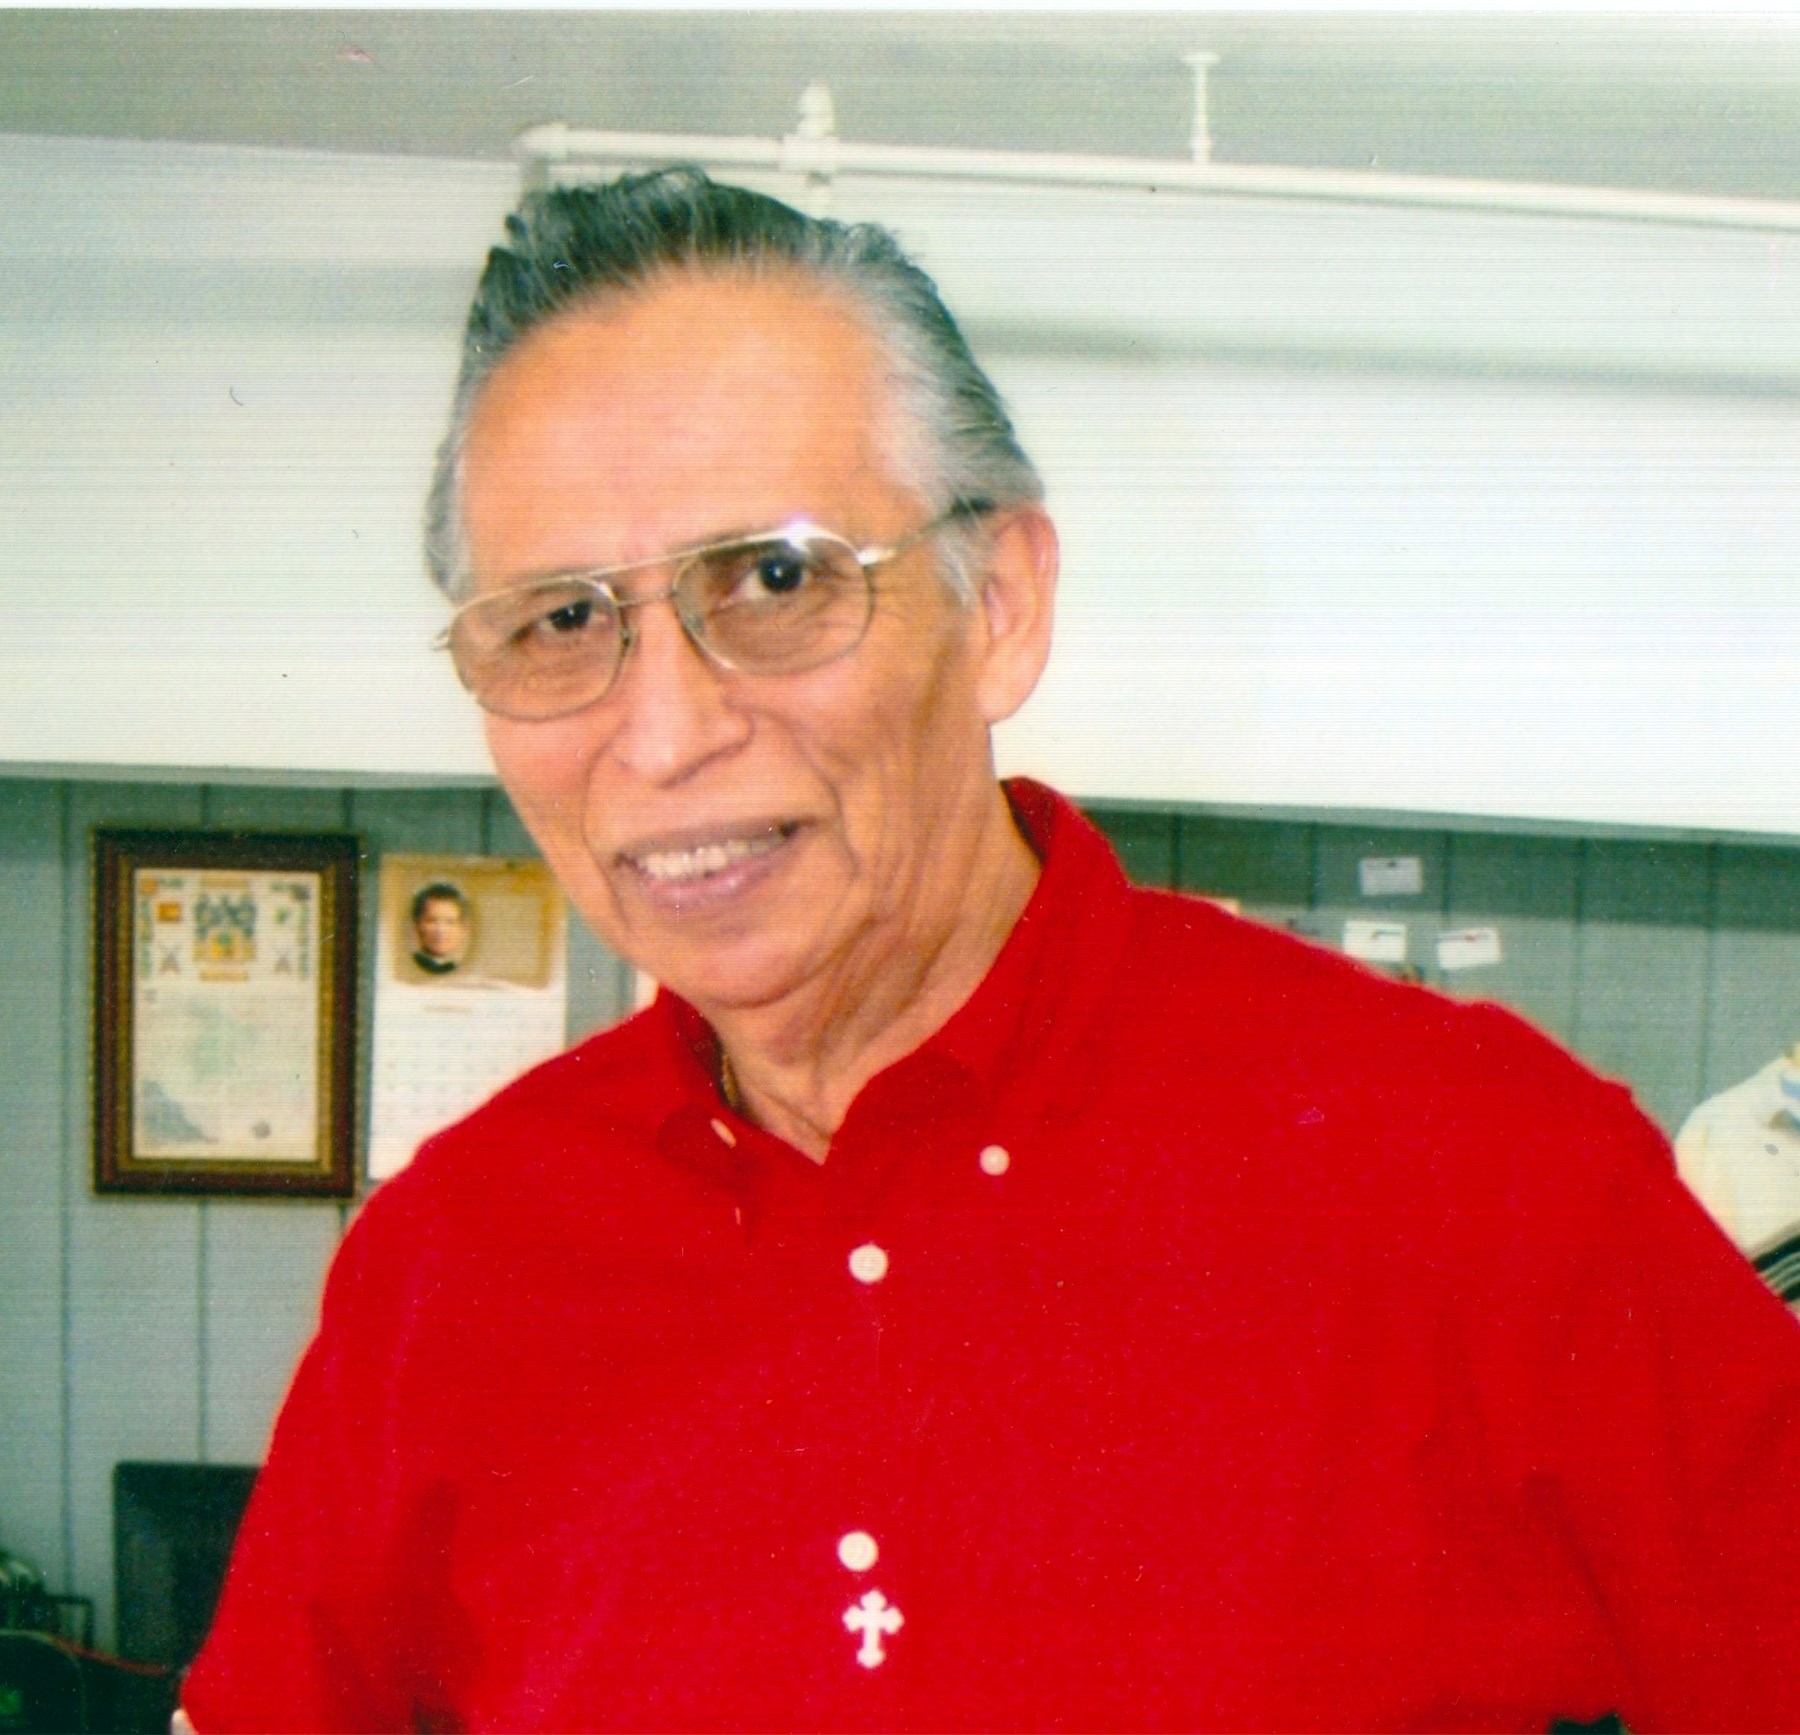 Obituary of Raymond Leonard Robles - 07/04/2018 - From the Family